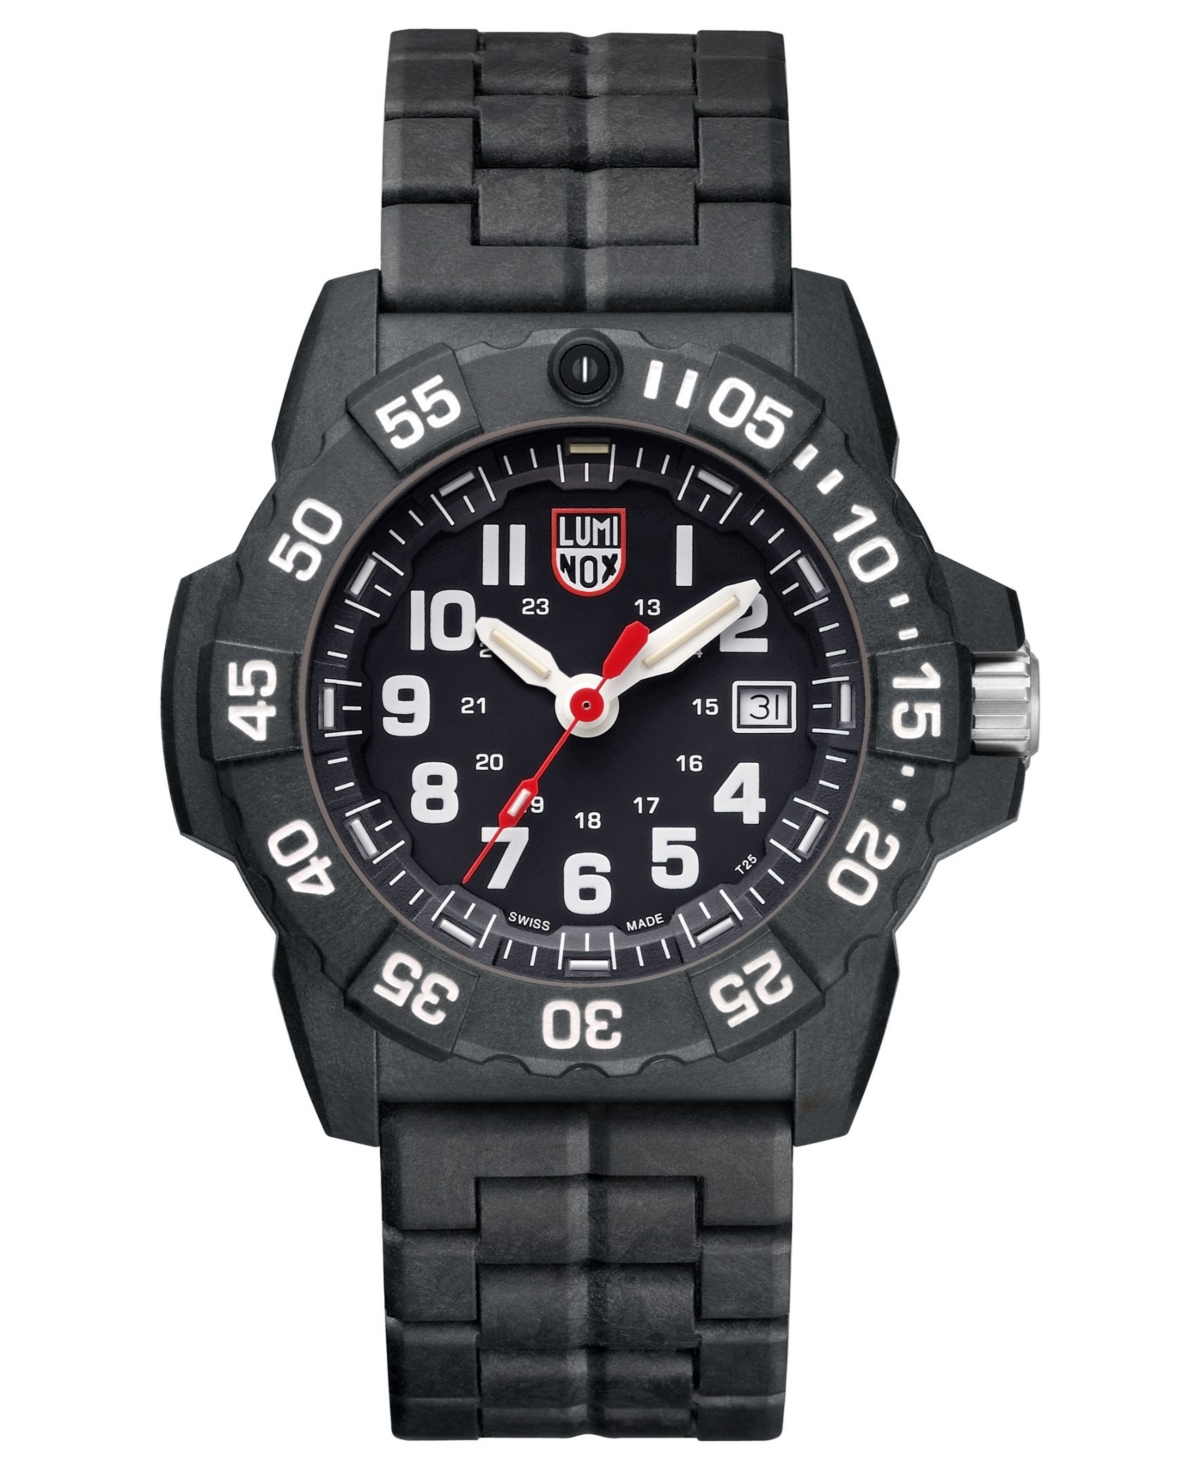 3502 Navy Seal Watch, Carbon Link Bracelet - Black